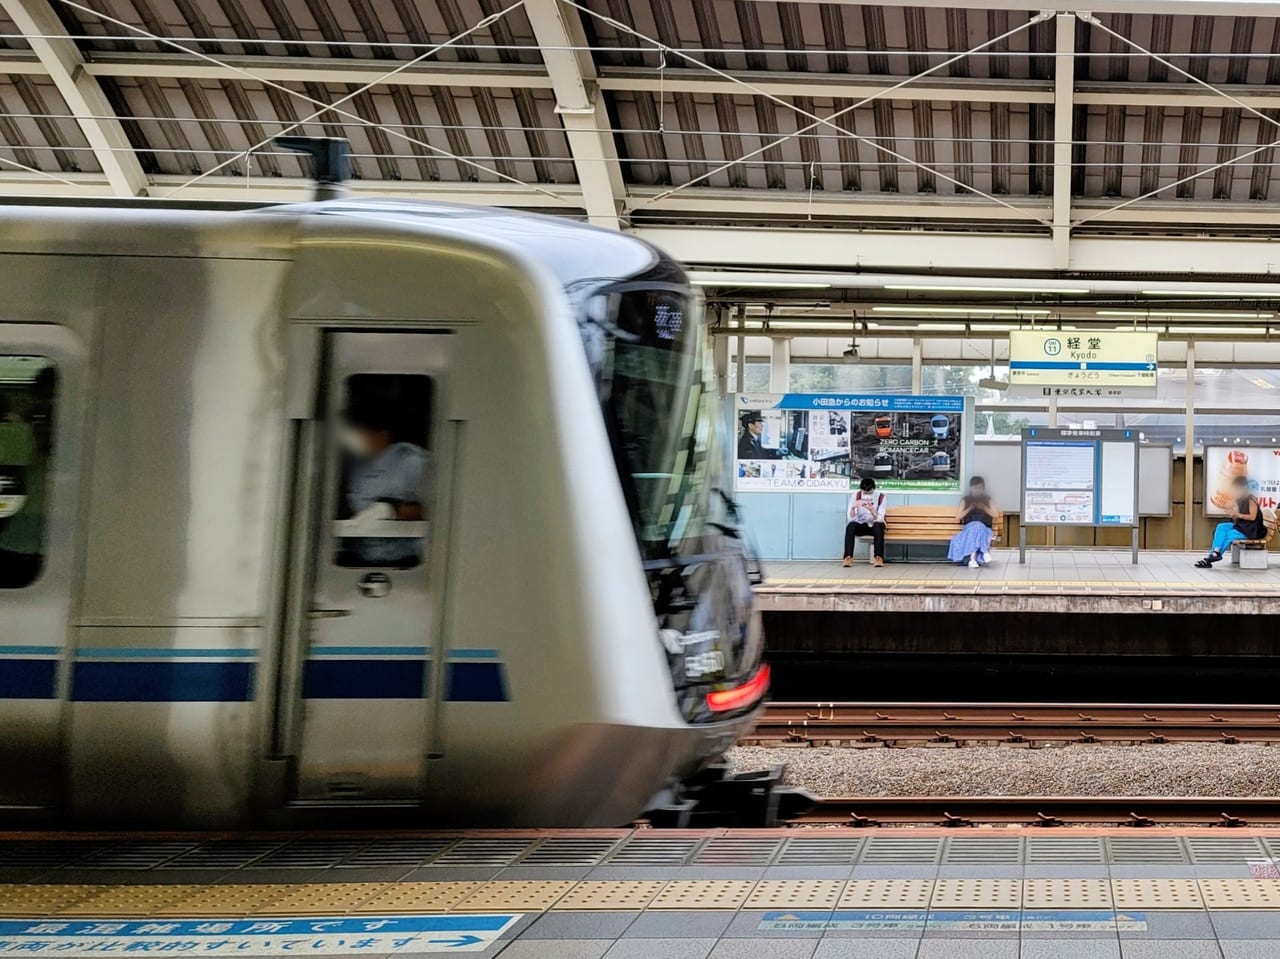 20220714 小田急線経堂駅でホームと電車